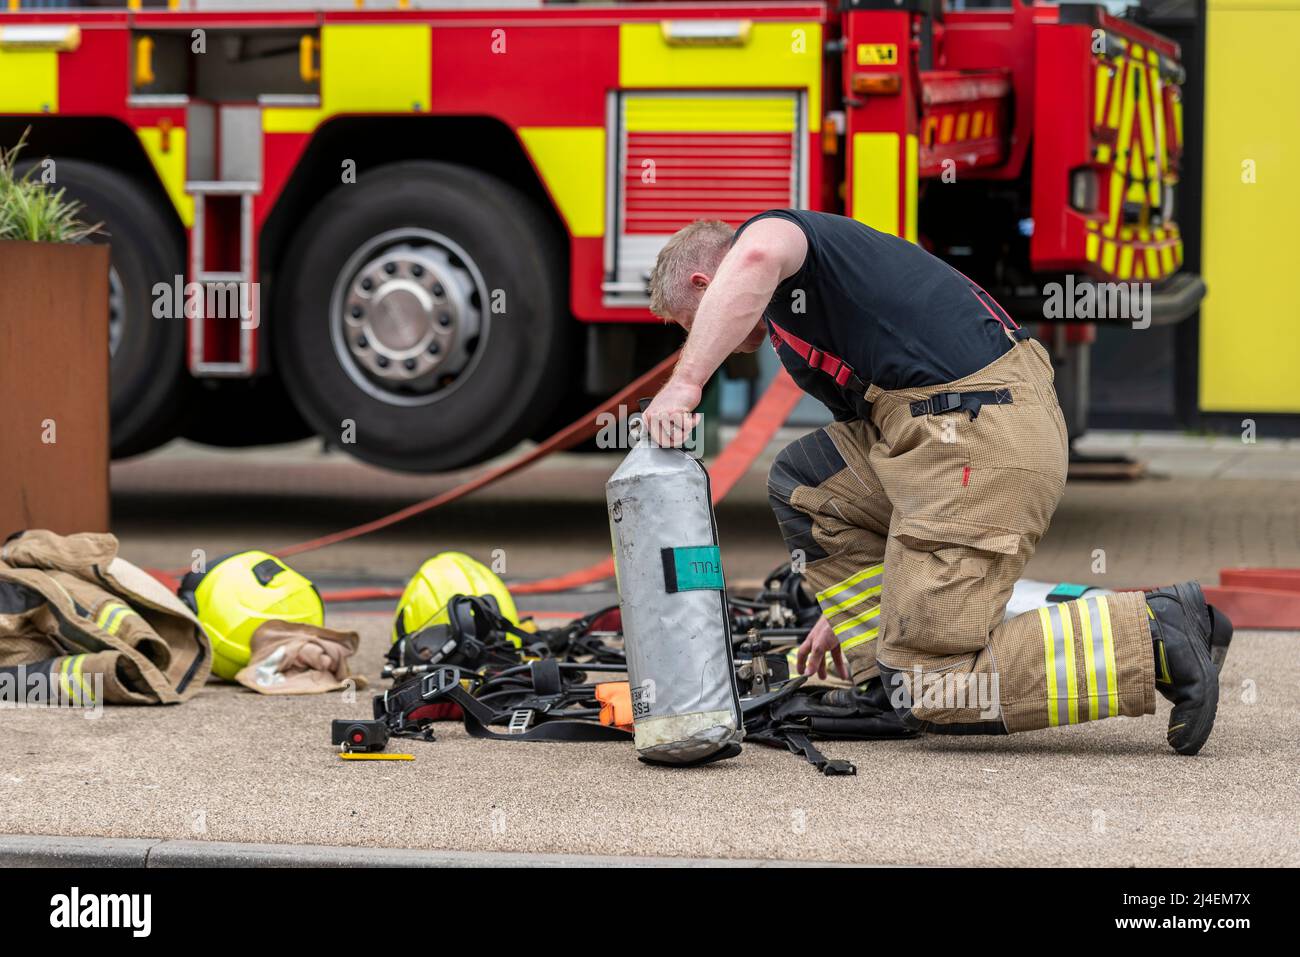 Essex County Fire & Rescue Service führt eine Trainingsübung in der Studentenunterkunft der University of Essex in Southend durch. Feuerwehrmann Verpackung Ausrüstung Stockfoto